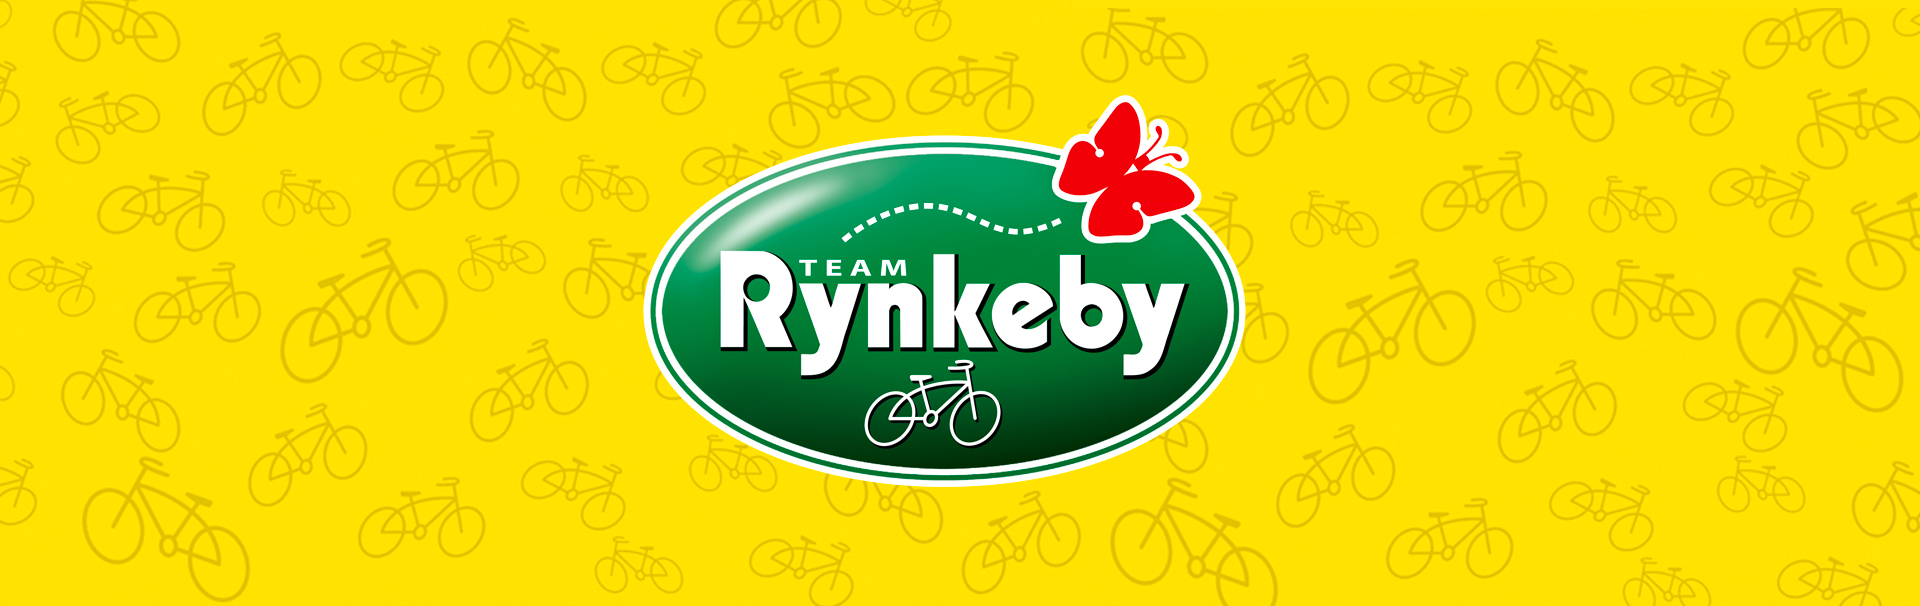 Sponsor for Team Rynkeby